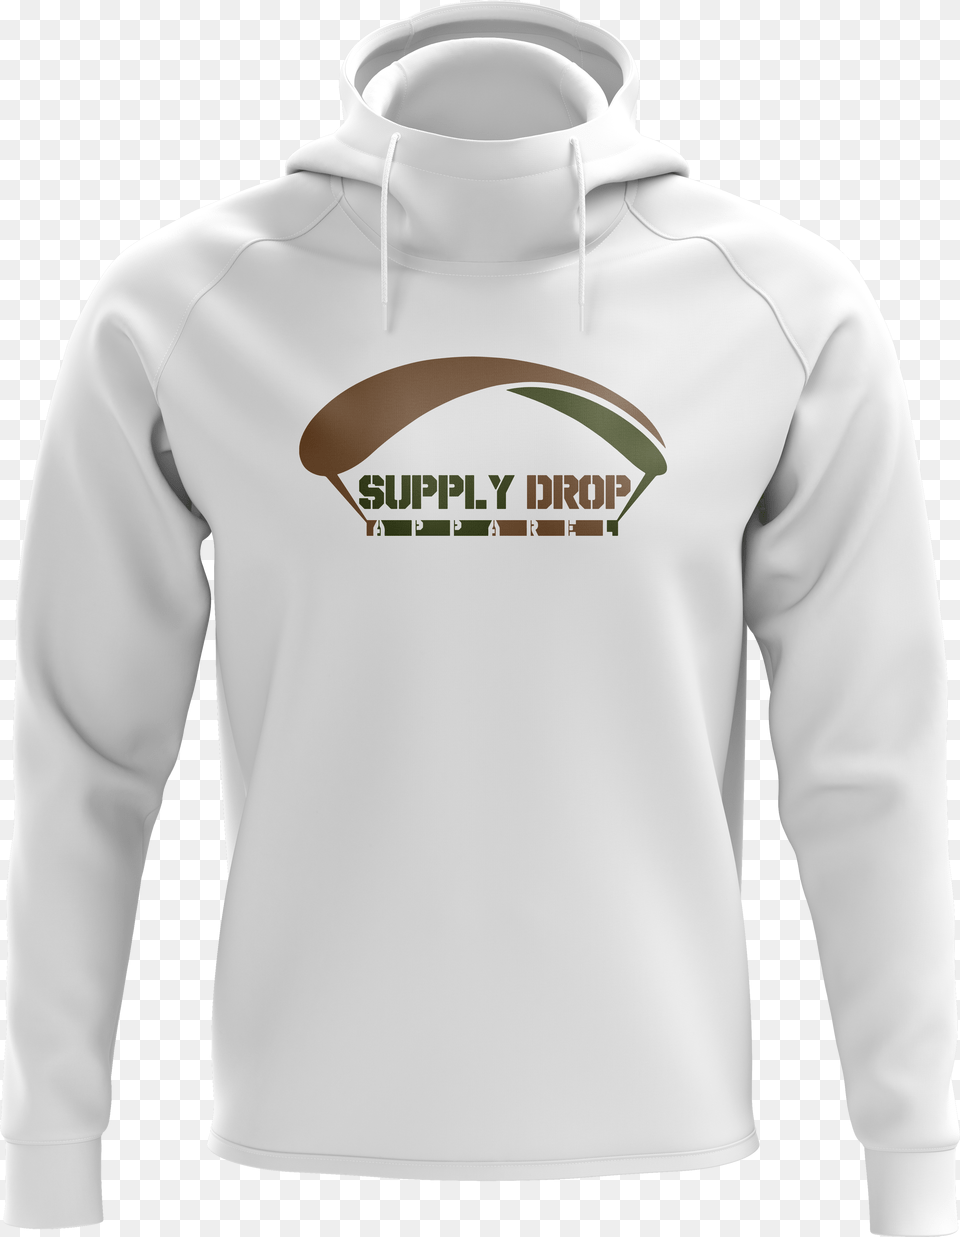 Supply Drop Unisex Hoodie Sweatshirt Free Png